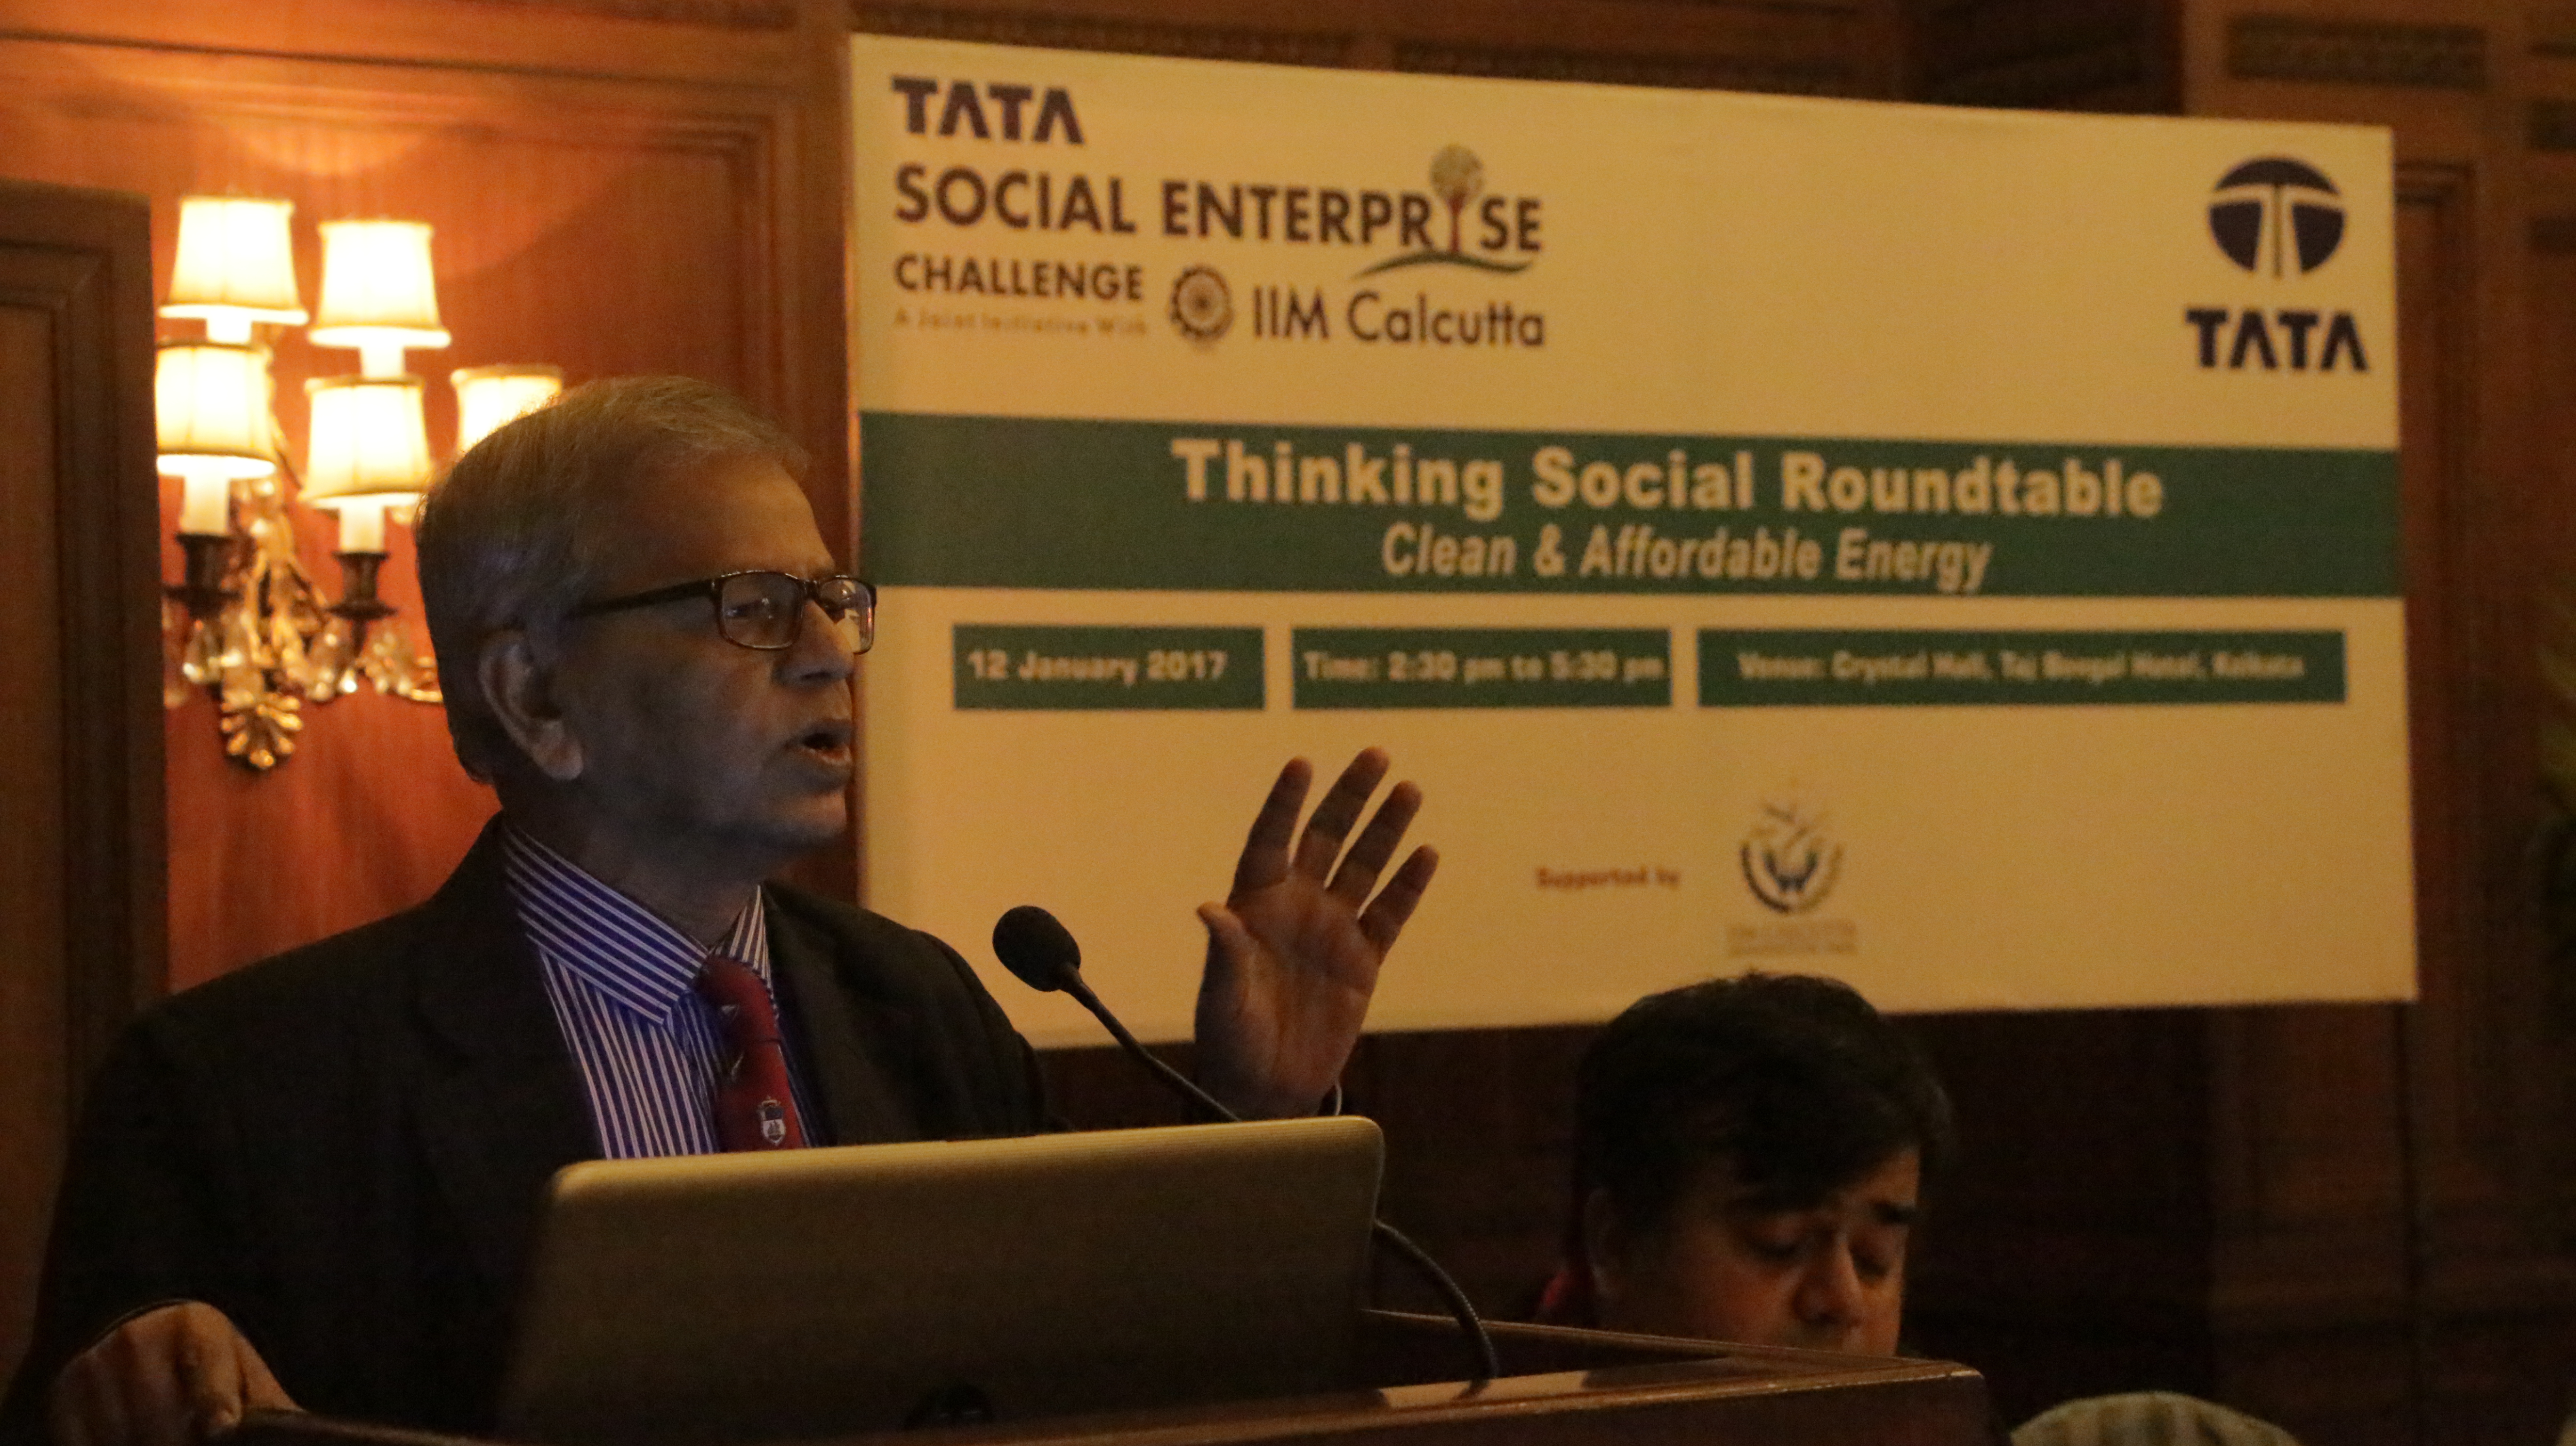 Thinking Social Roundtable – Kolkata, 12 Jan 2017